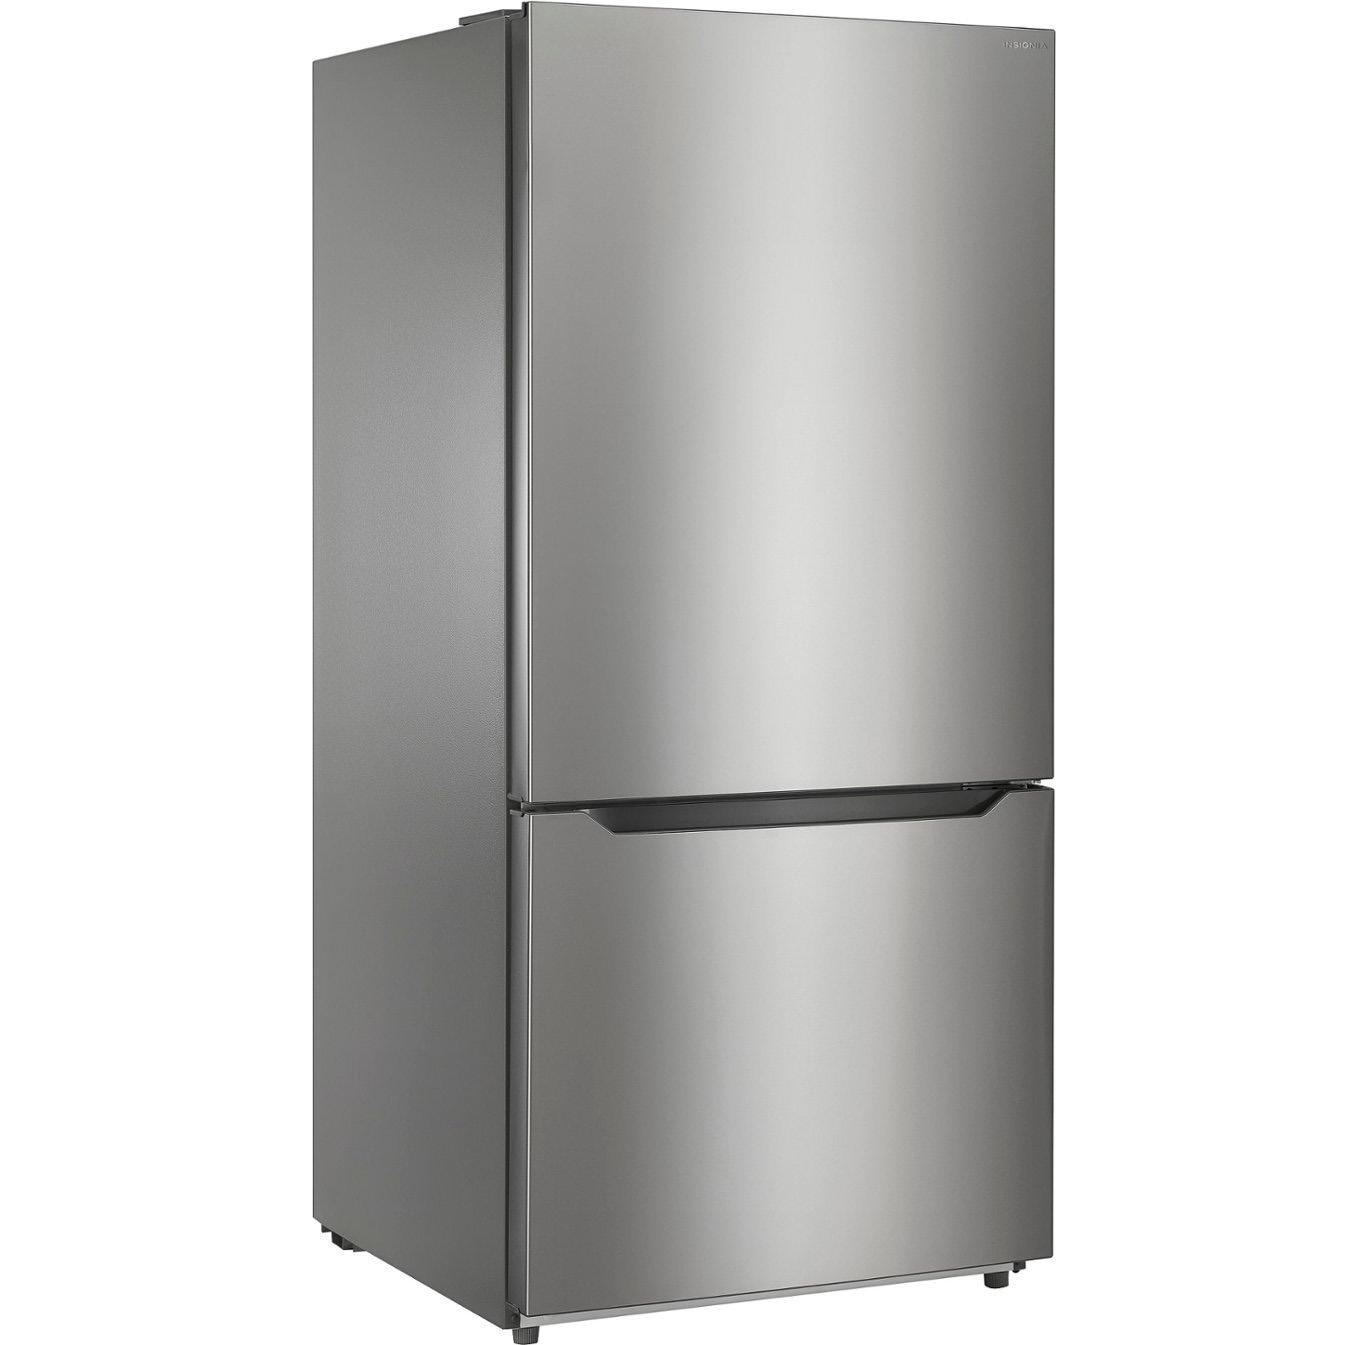 Insignia Bottom Freezer Refrigerator for $549.99